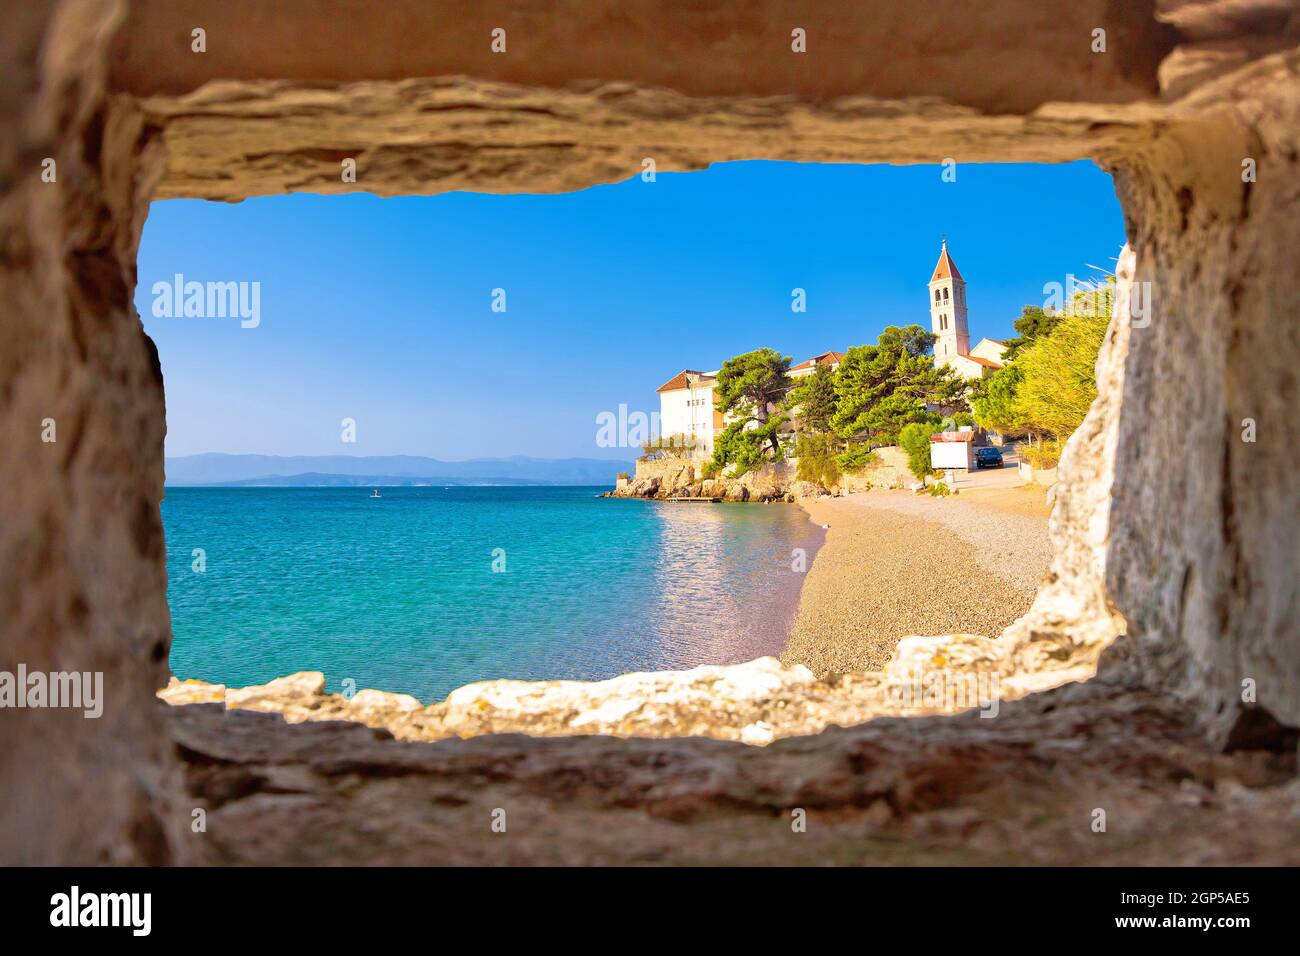 Monastère sur la plage de galets à bol vue par la fenêtre en pierre, île de Brac, Dalmatie, Croatie Banque D'Images